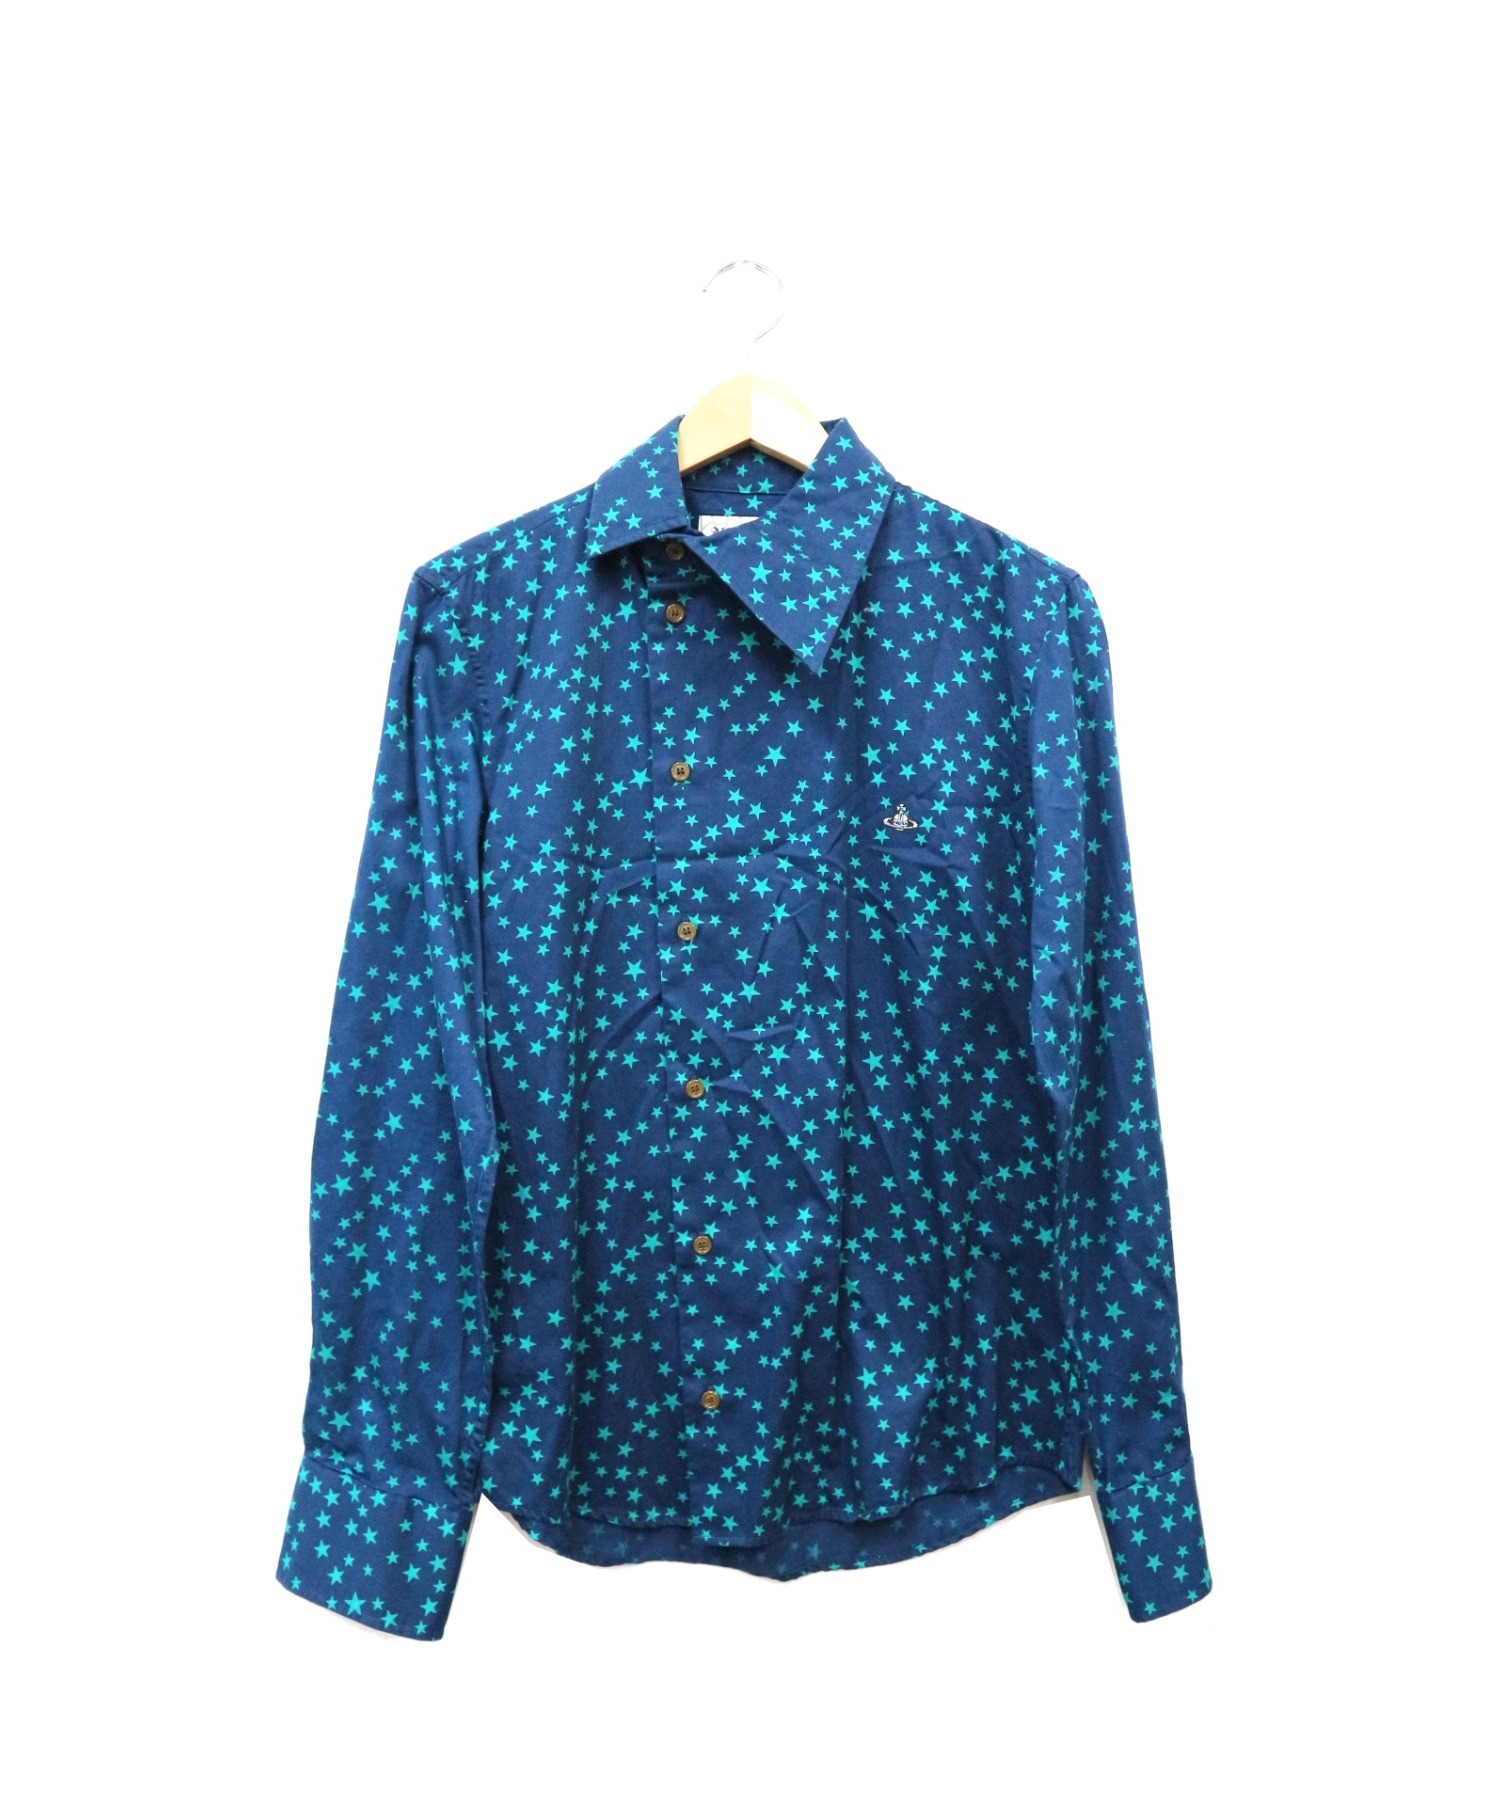 Vivienne Westwood (ヴィヴィアンウエストウッド) スタープリントアシンメトリーシャツ ネイビー サイズ:44 日本製